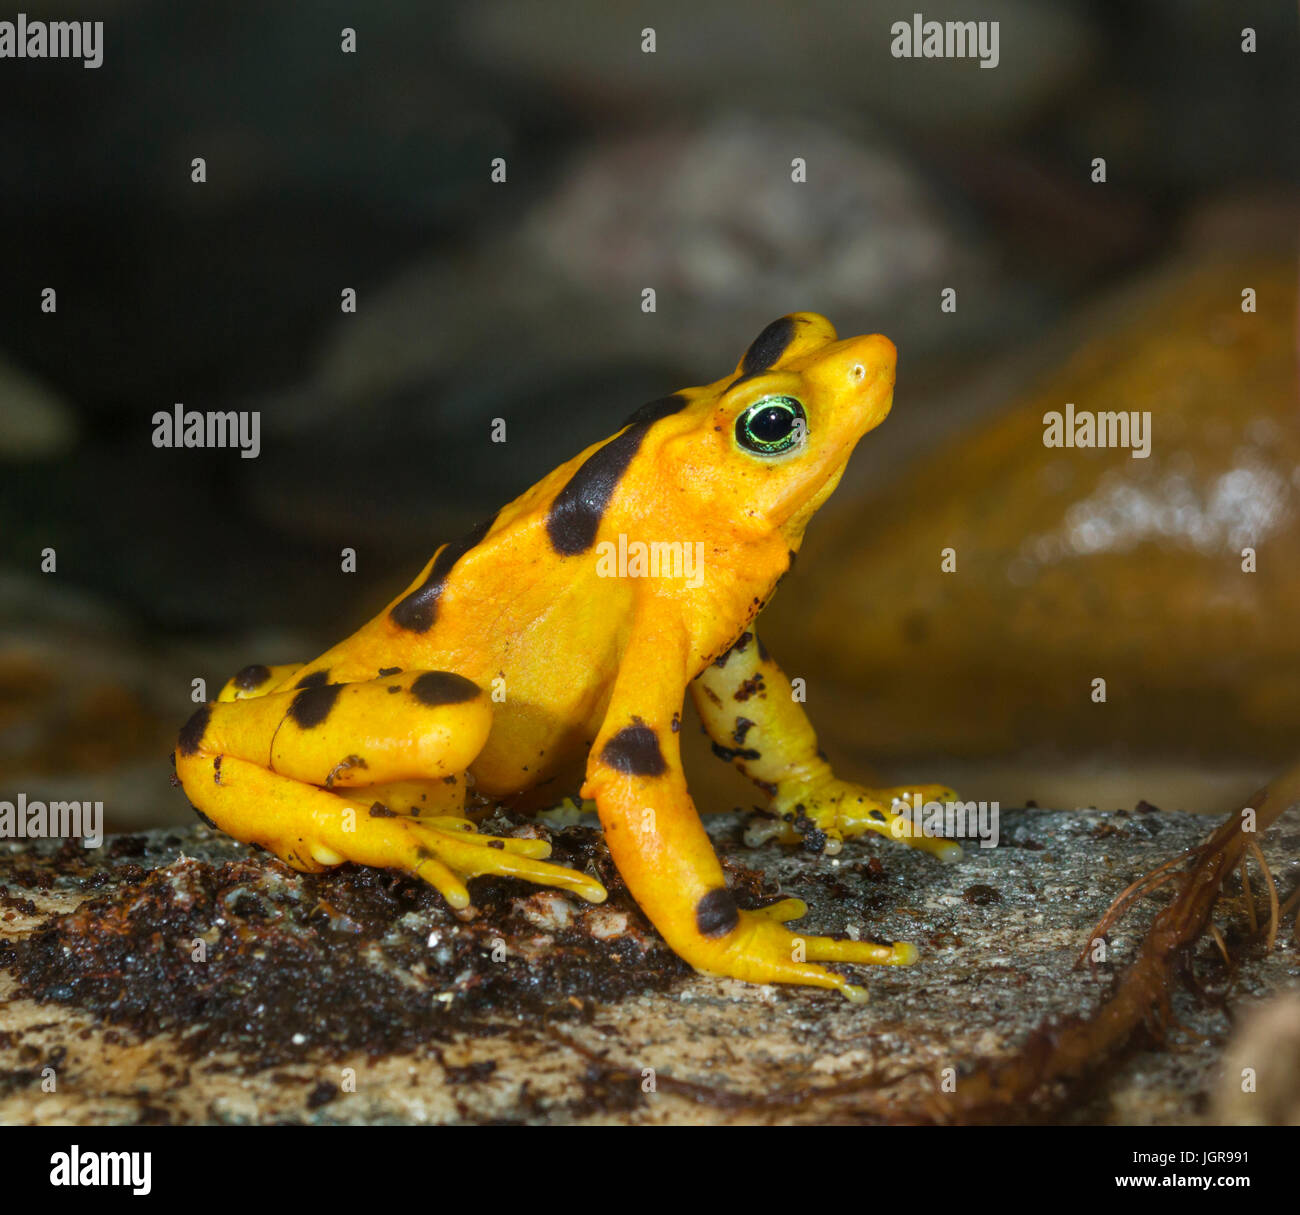 La disparition de Zetek panaméen golden frog (Atelopus zeteki), captive (originaire de forêts brumeuses de Panama, Amérique centrale) Banque D'Images